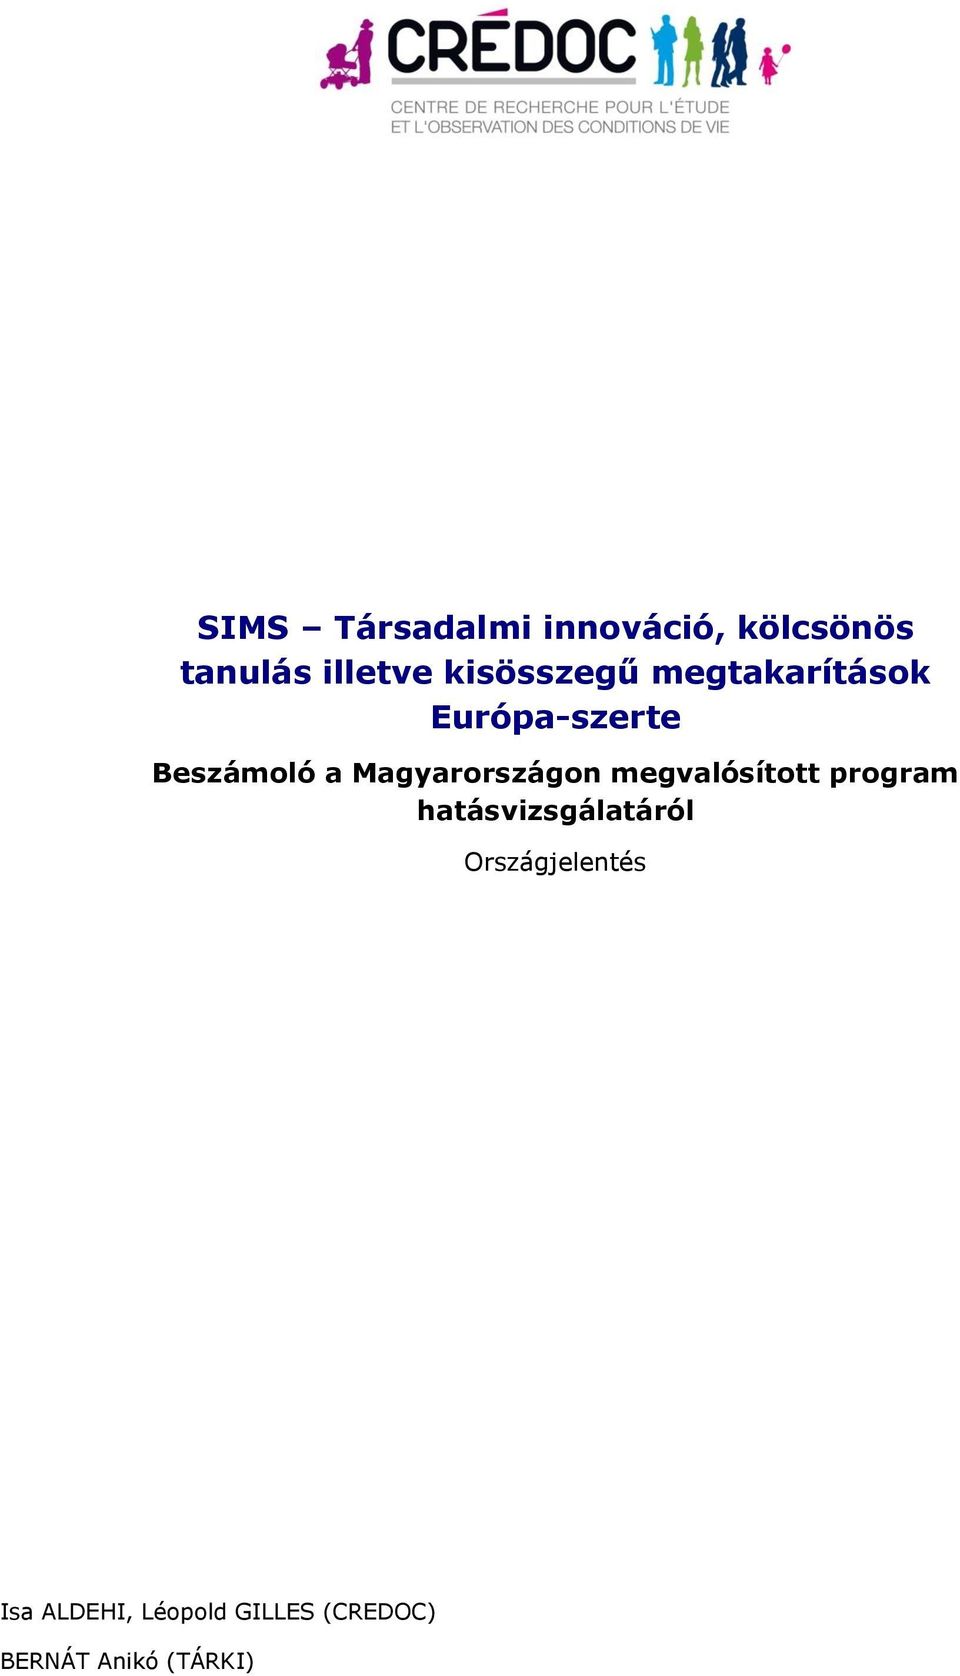 Magyarországon megvalósított program hatásvizsgálatáról